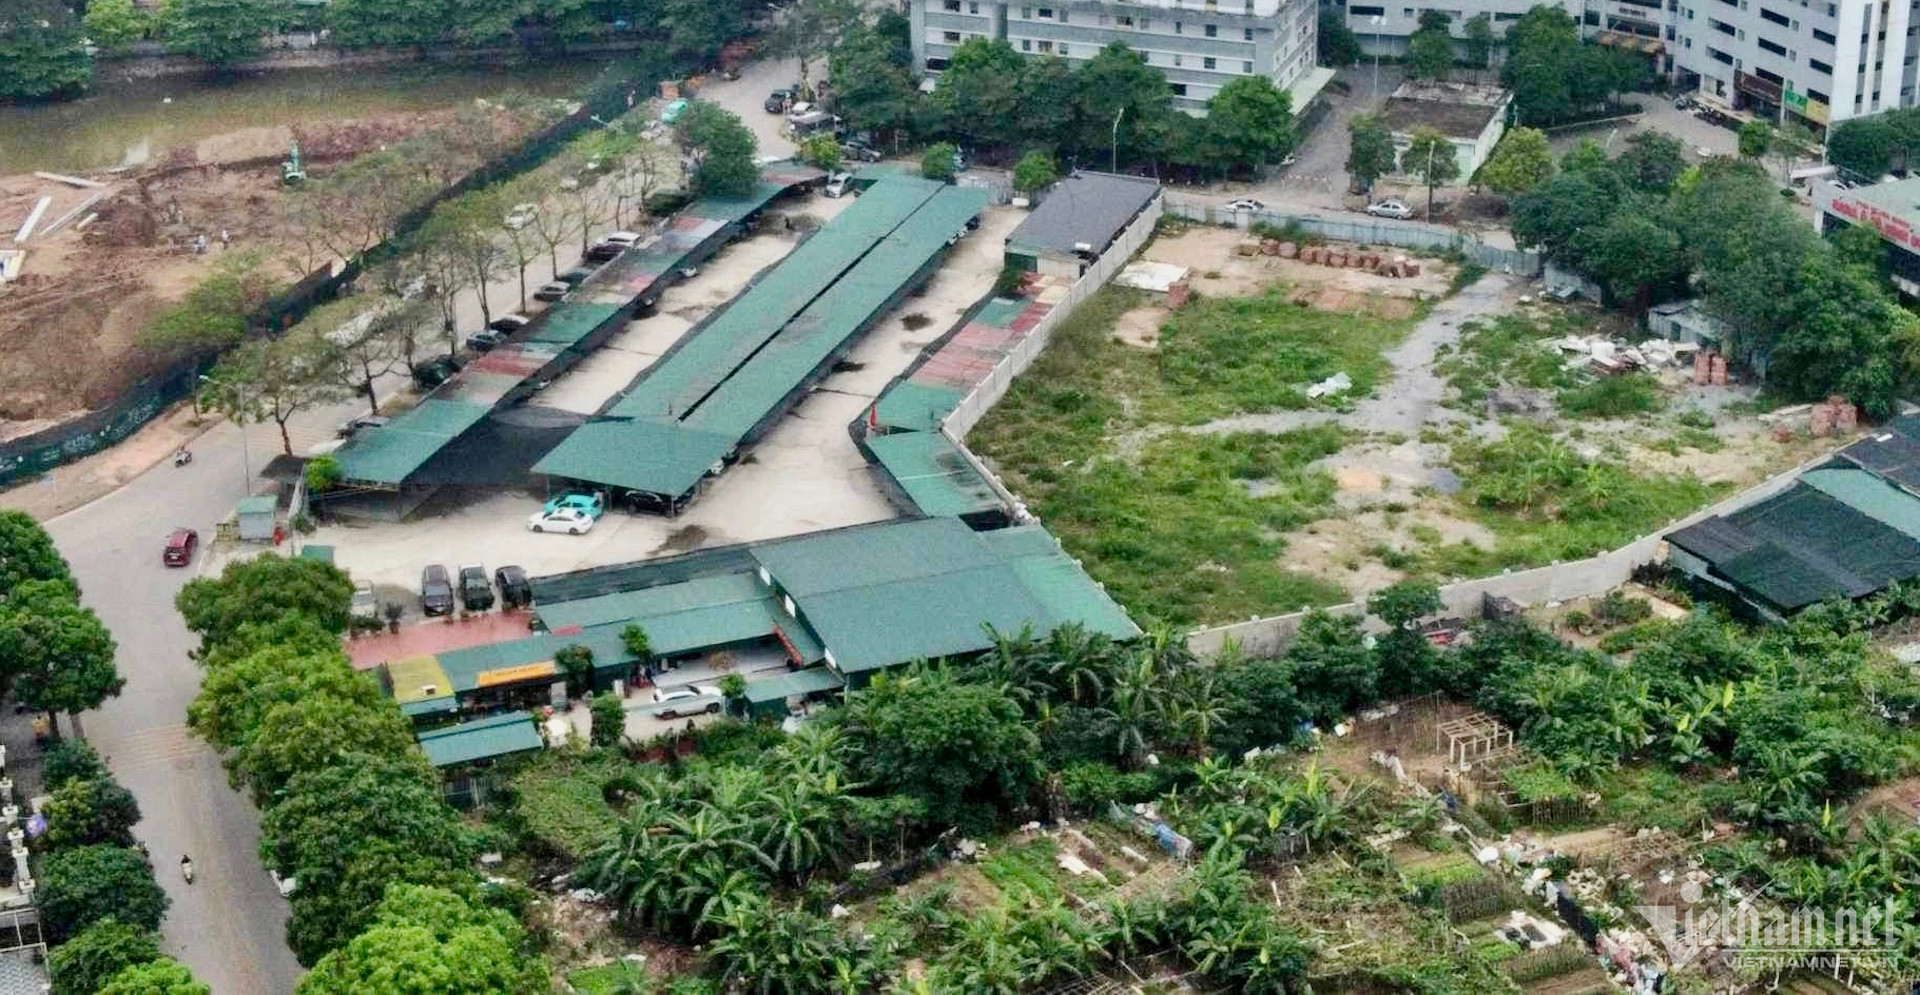 Trước đó, UBND quận Hoàng Mai kiến nghị xin được đầu tư bằng nguồn vốn ngân sách của quận đối với 7 ô đất trường học tại một số khu đô thị trên địa bàn phường Hoàng Liệt, còn 5 ô đất trường học thứ phát đề nghị TP chỉ đạo các nhà đầu tư sớm triển khai nếu không sẽ kiên quyết thu hồi.